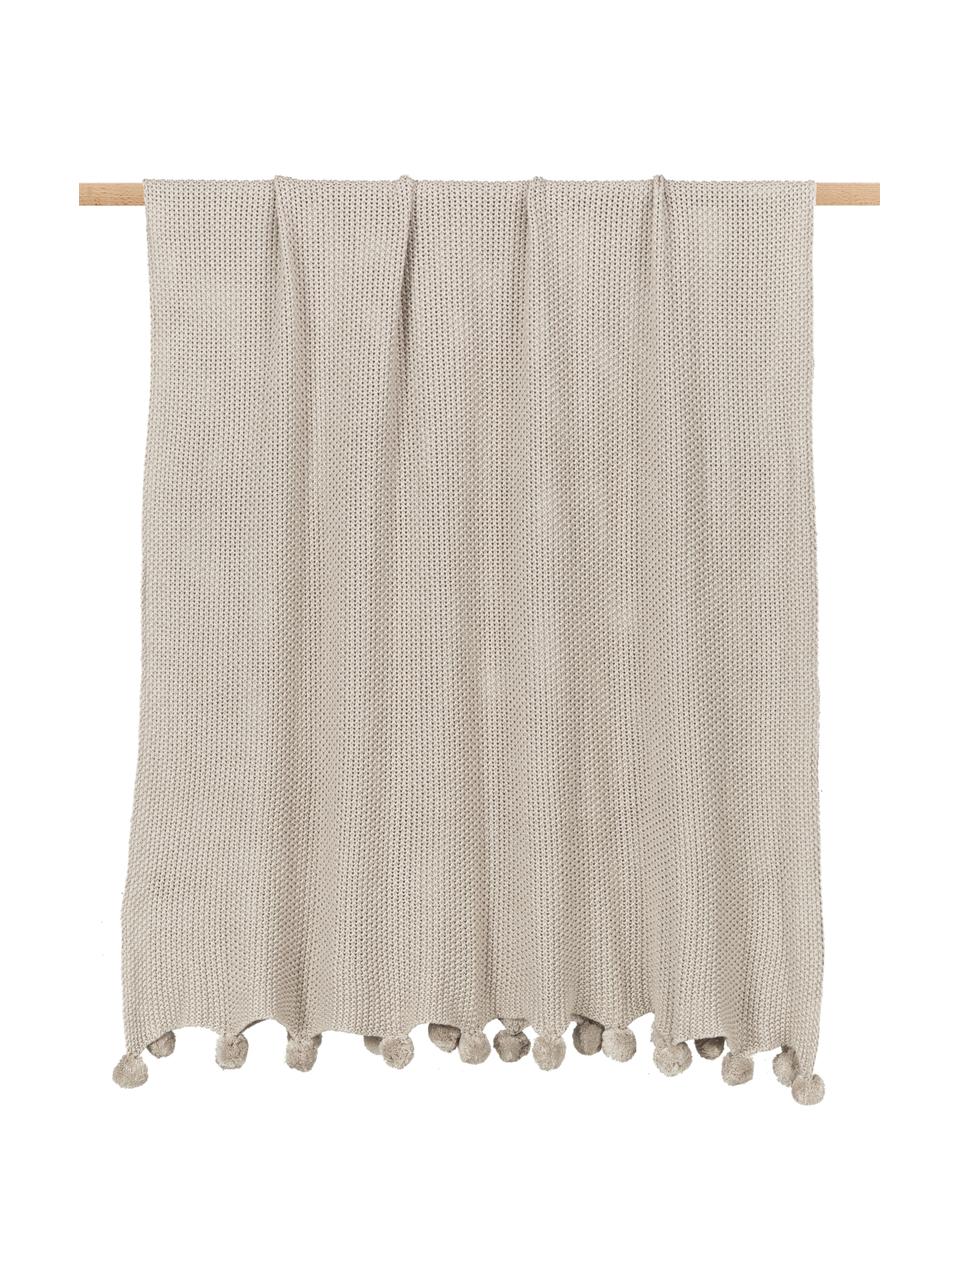 Coperta a maglia con pompon Molly, 100% cotone, Beige, Larg. 130 x Lung. 170 cm